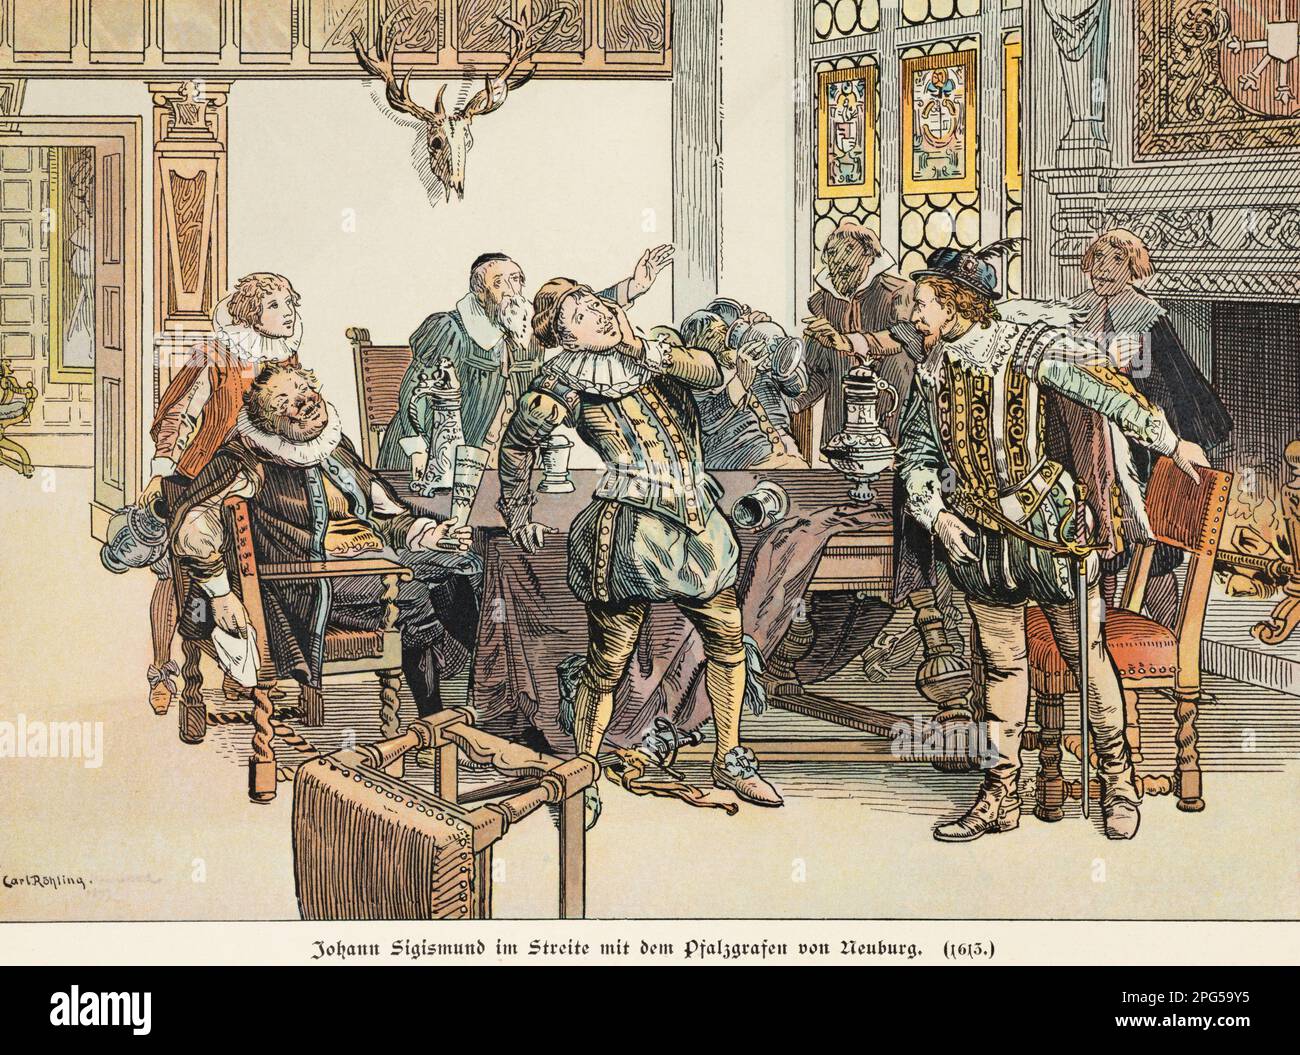 Elector Johann Sigismund argumenting con il palsgravio di Neuburg nel 1613, storia della Hohenzollern, Prussia, illustratin storico 1899 Foto Stock